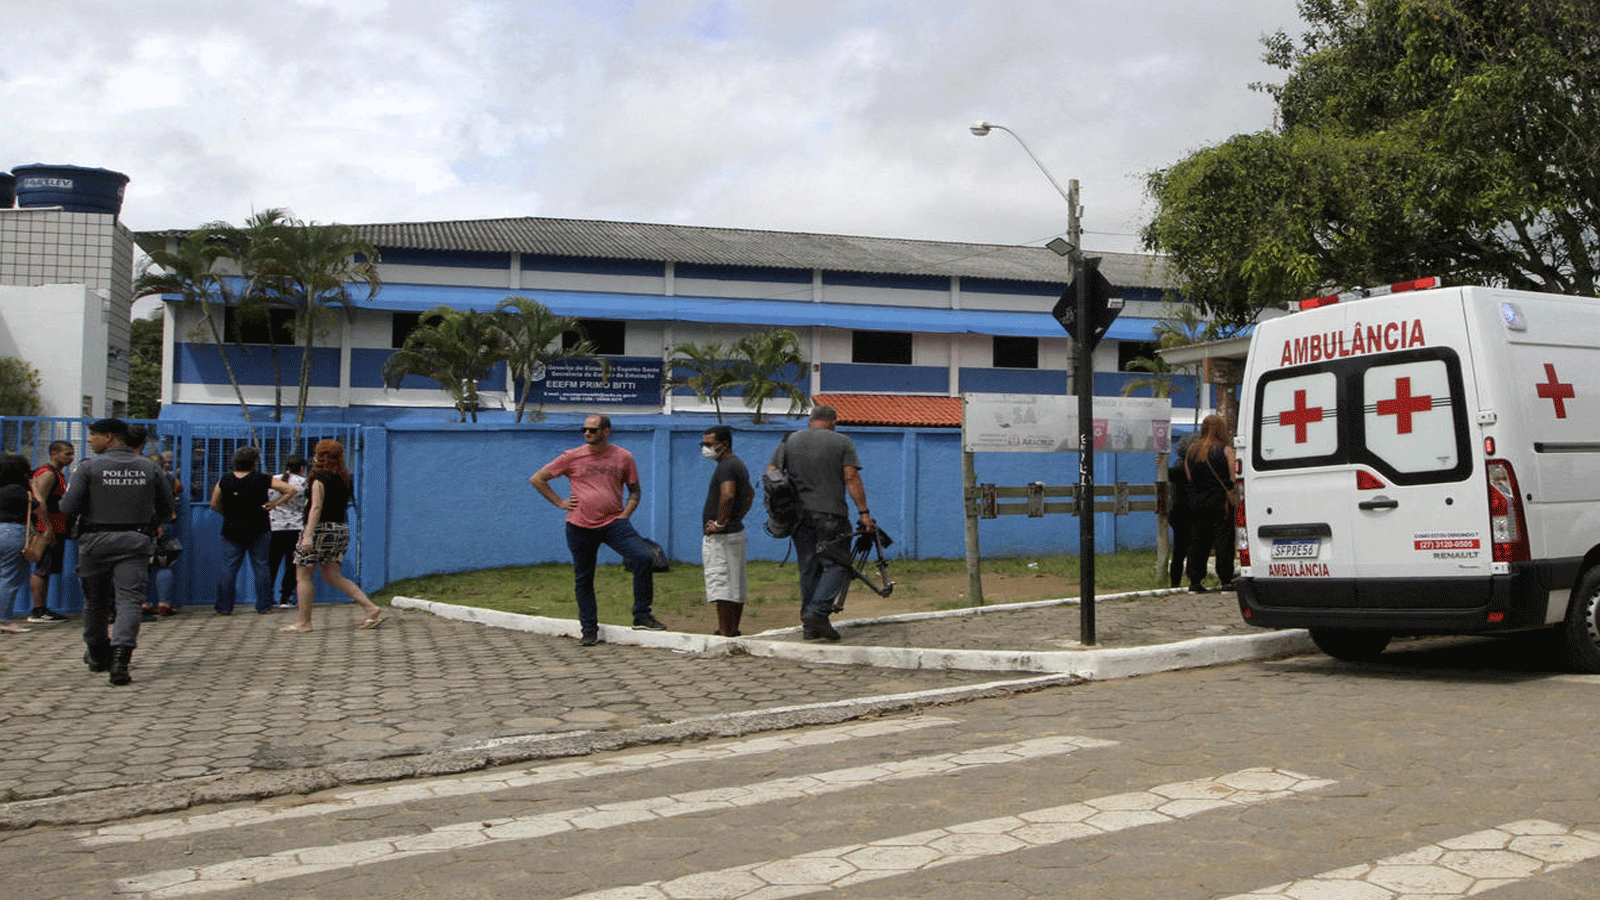 صورة أرشيفية لمدرسة بريمو بيتي الحكومية. وهي واحدة من مدرستين وقع فيهما إطلاق نار في أراكروز، بولاية إسبيريتو سانتو، البرازيل. 25 تشرين الثاني\ نوفمبر 2022